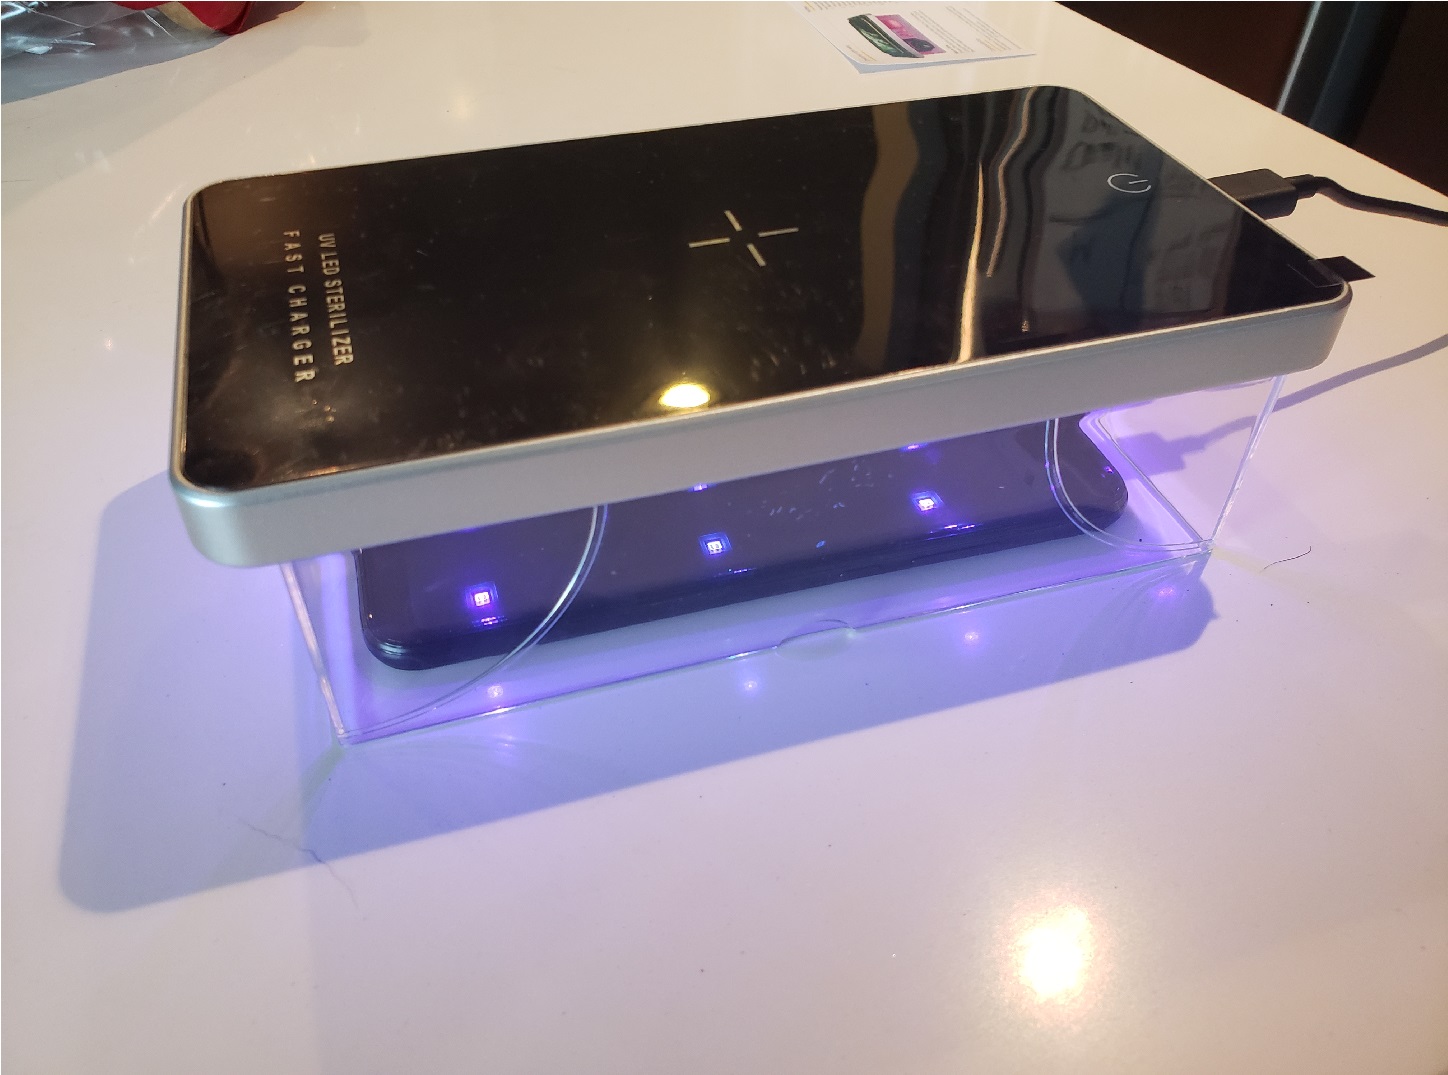 Évaluation de la boîte de stérilisateur portable UV avec chargeur sans fil  rapide - Blogue Best Buy